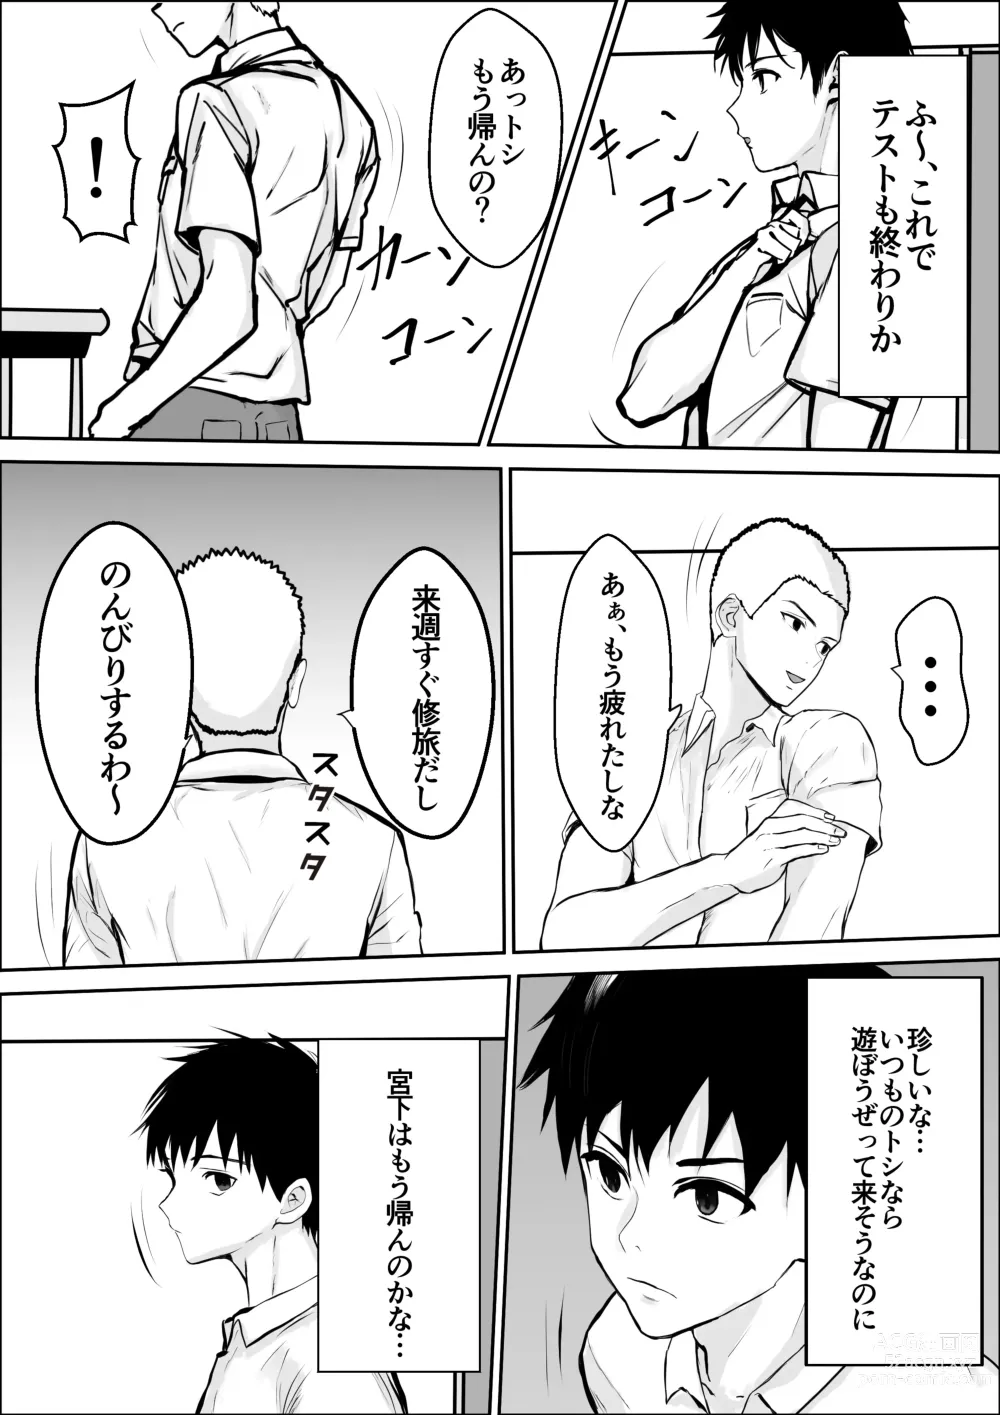 Page 8 of doujinshi Kyoumi no Mukougawa 2